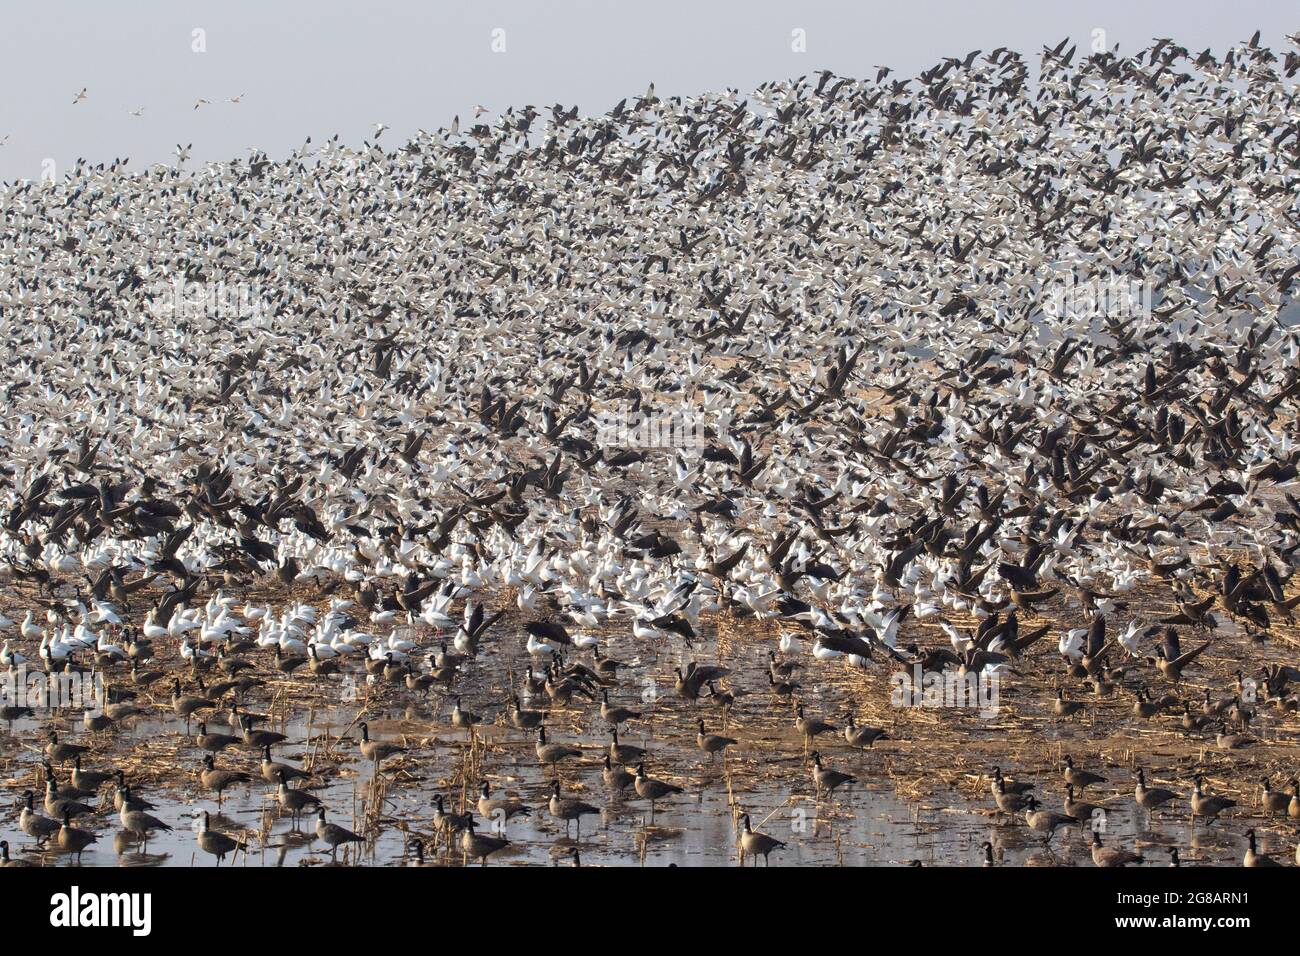 Un énorme troupeau d'Oies de Ross, Chen rossii, qui s'envole d'un champ de maïs rempli d'oies dans la réserve naturelle nationale de San Joaquin River, en Californie. Banque D'Images